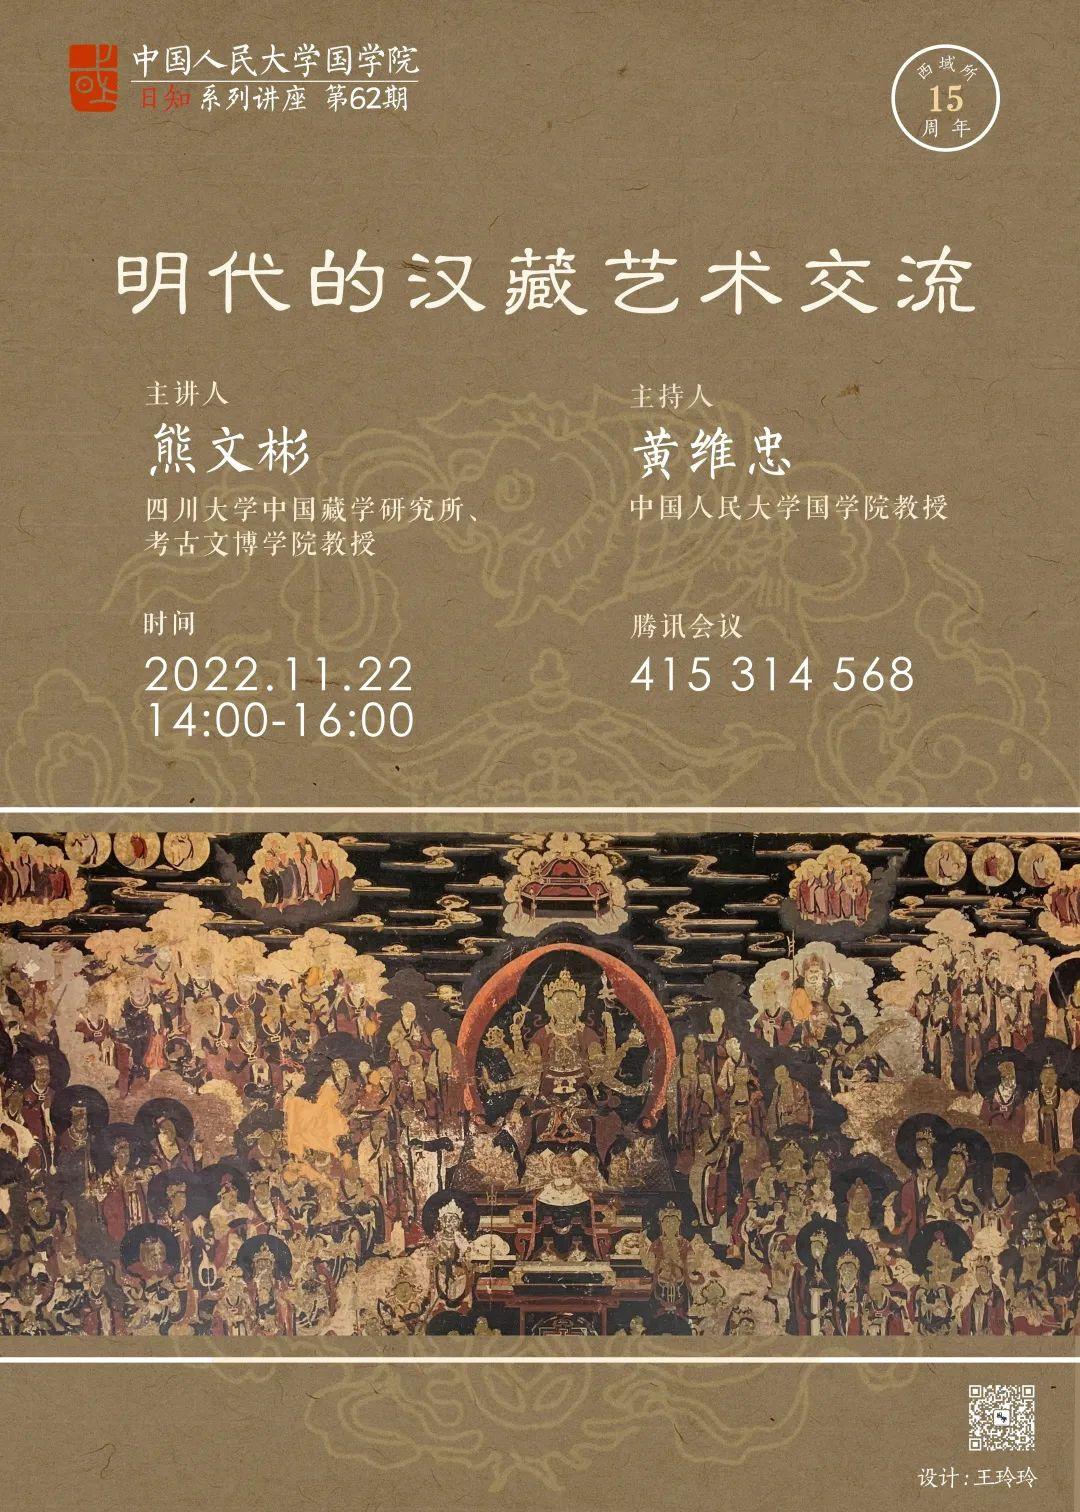 明代的汉藏艺术交流